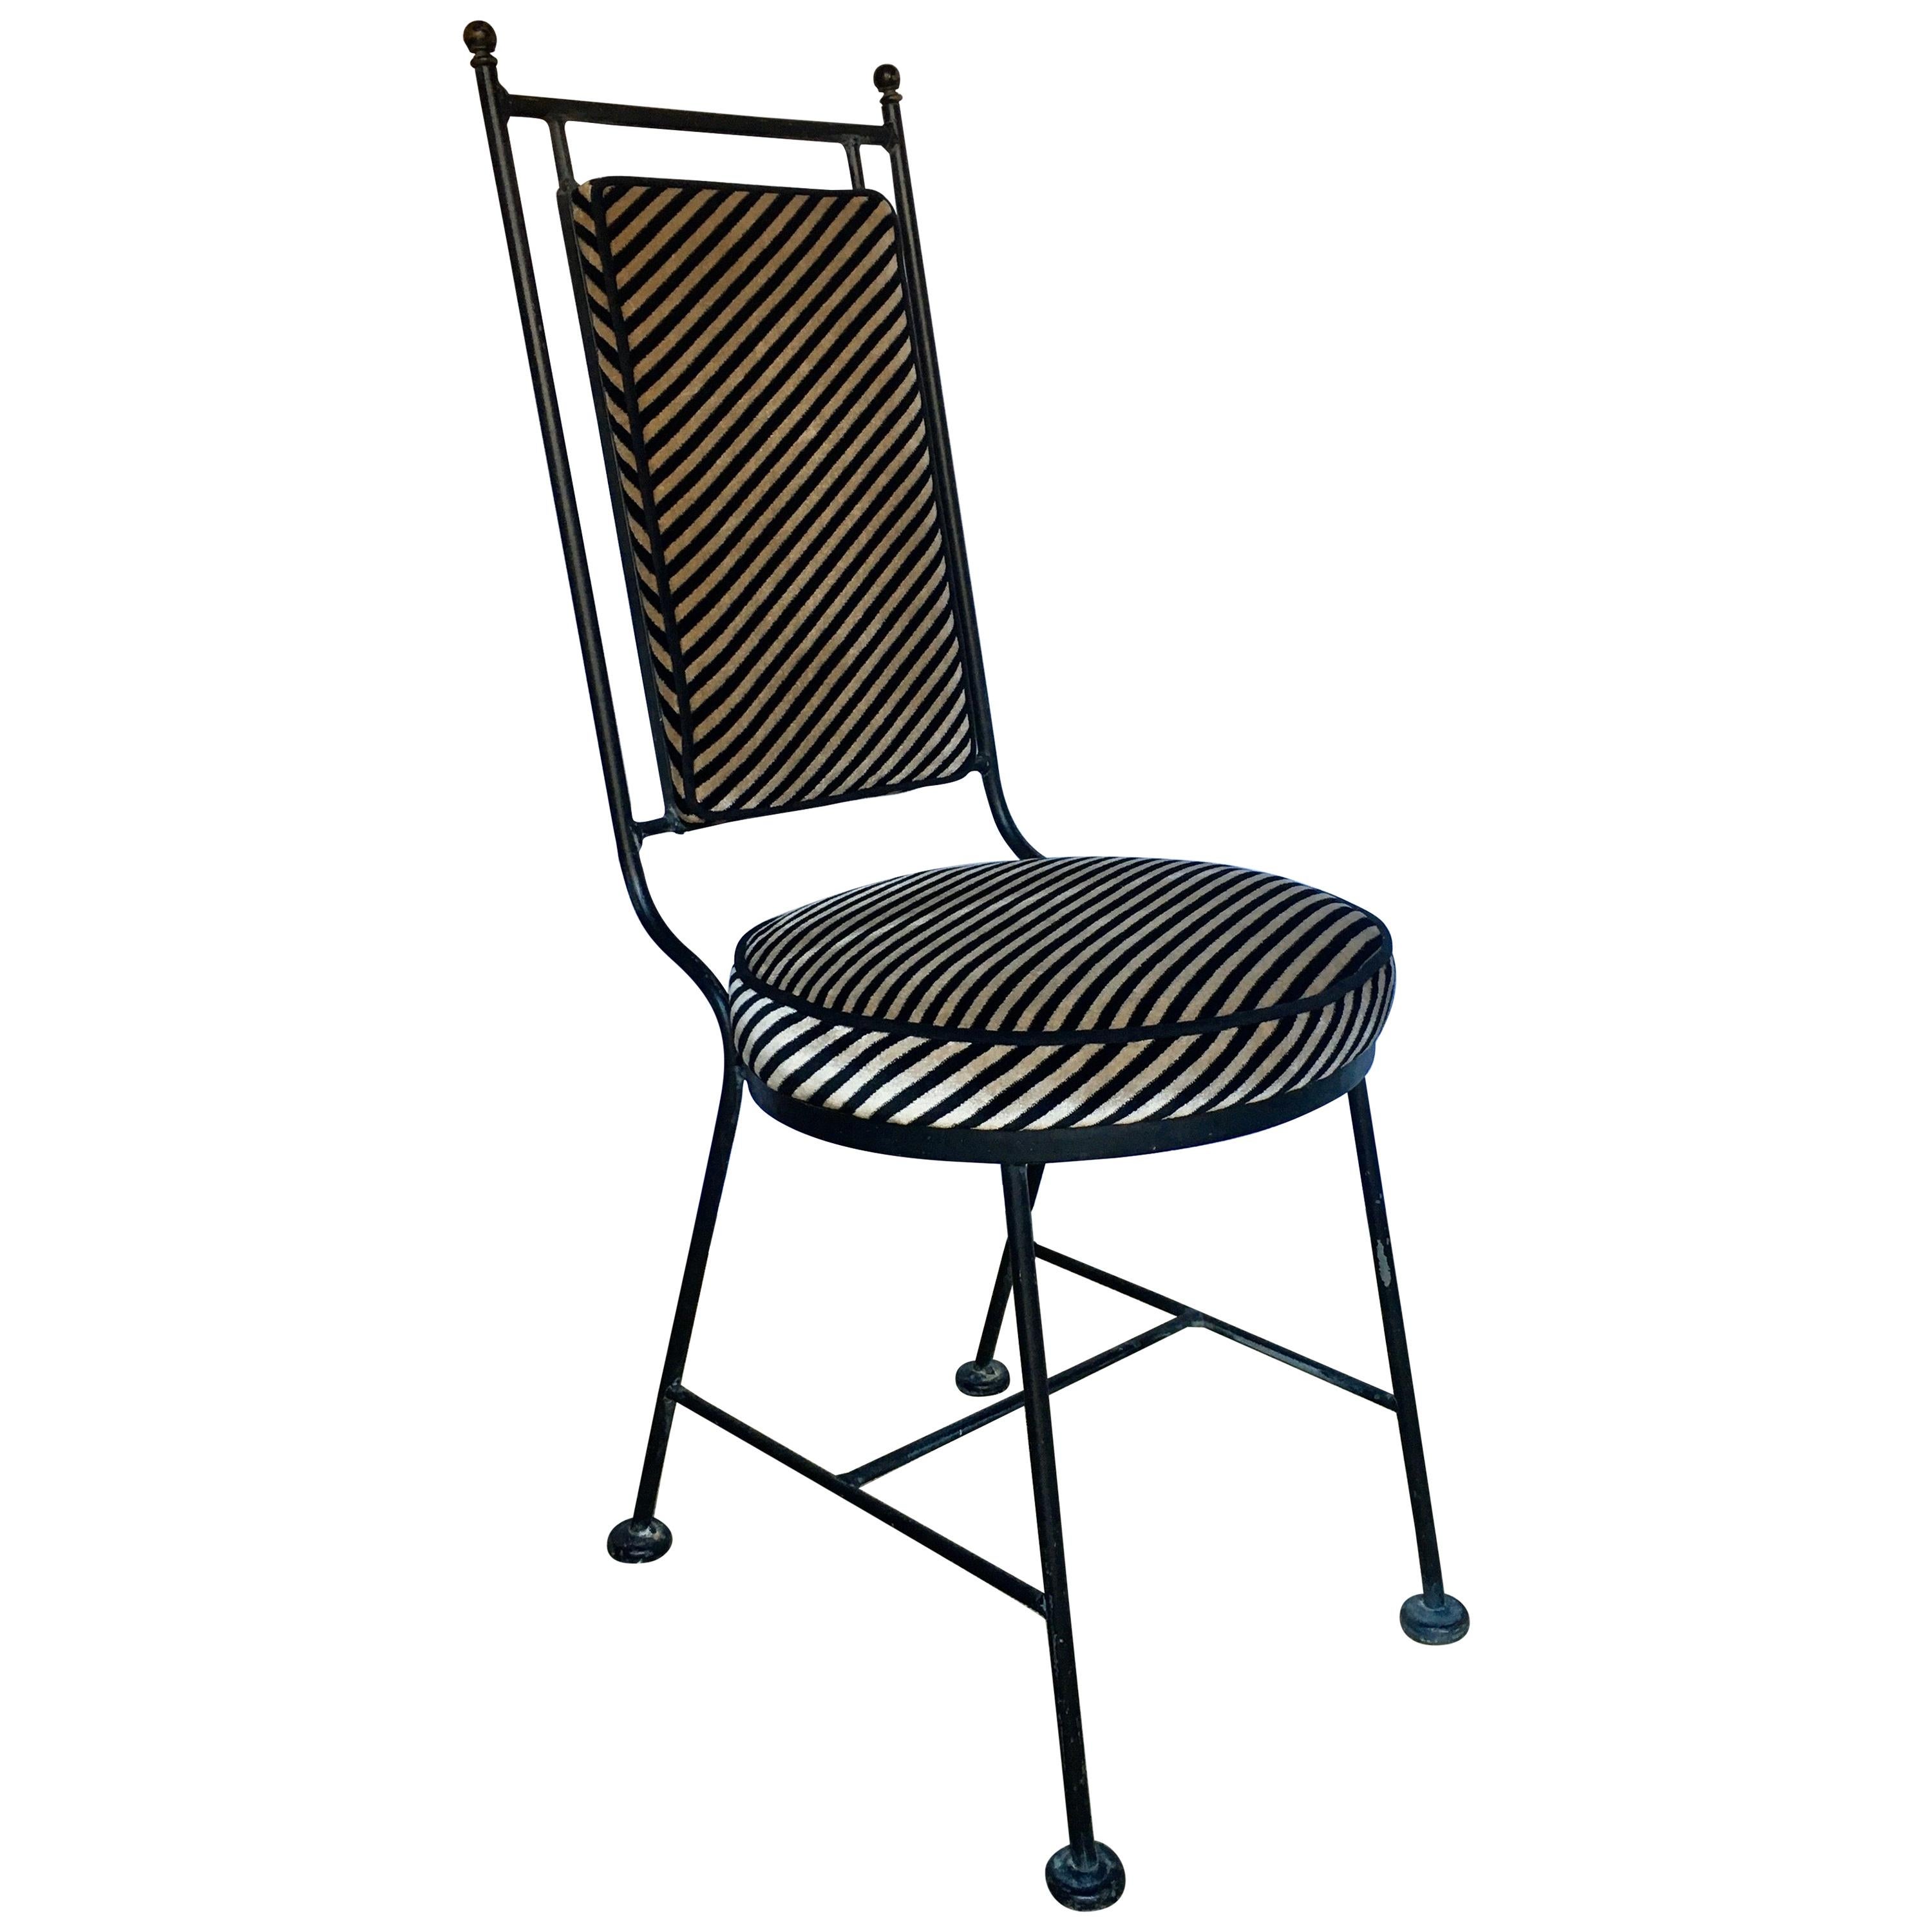 Sleek Mid-Century Modern Iron and Striped Salterini Style Chair, Italian